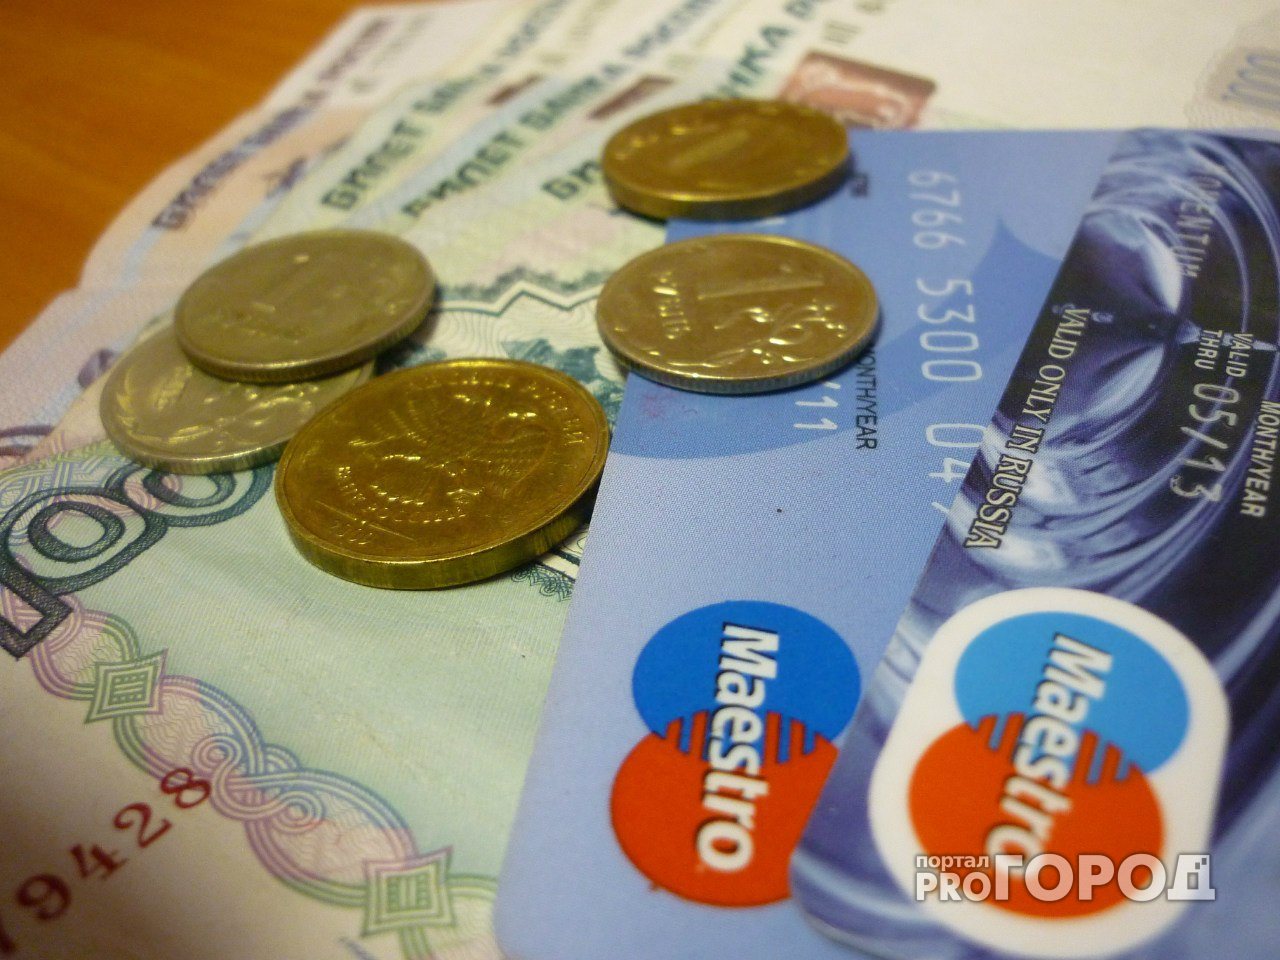 Жительница Марий Эл потеряла 40 тысяч рублей, рассказав cvc-кoд своей карты